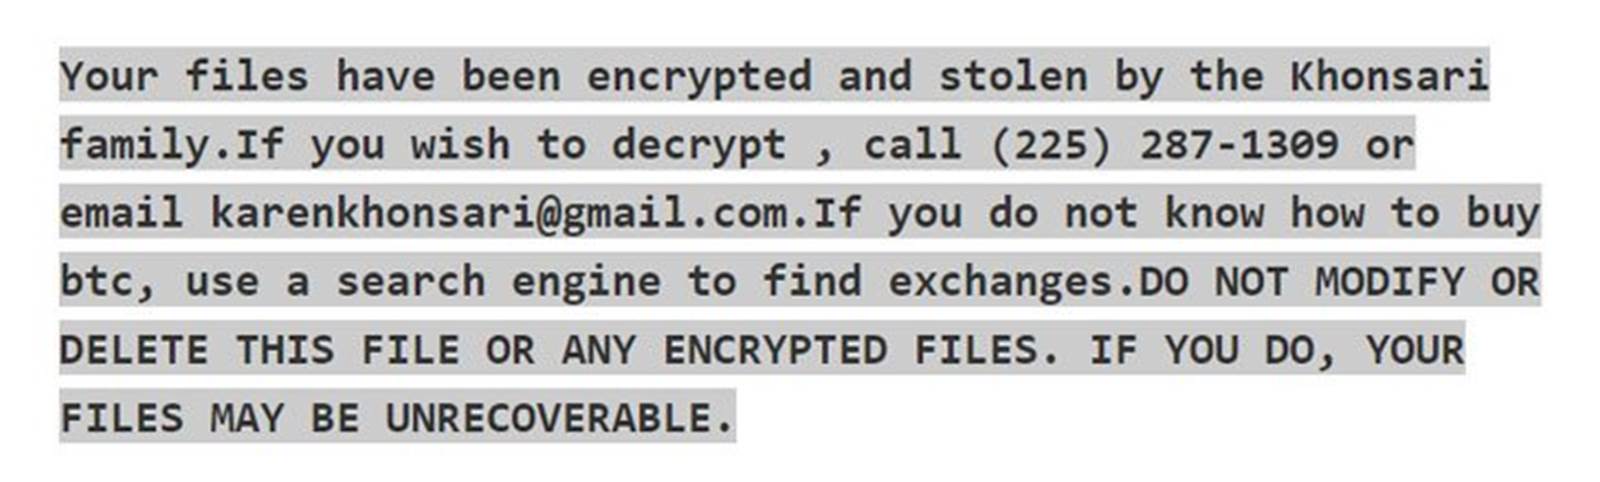 El ransomware aprovecha la vulnerabilidad de #Log4j #Log4Shell